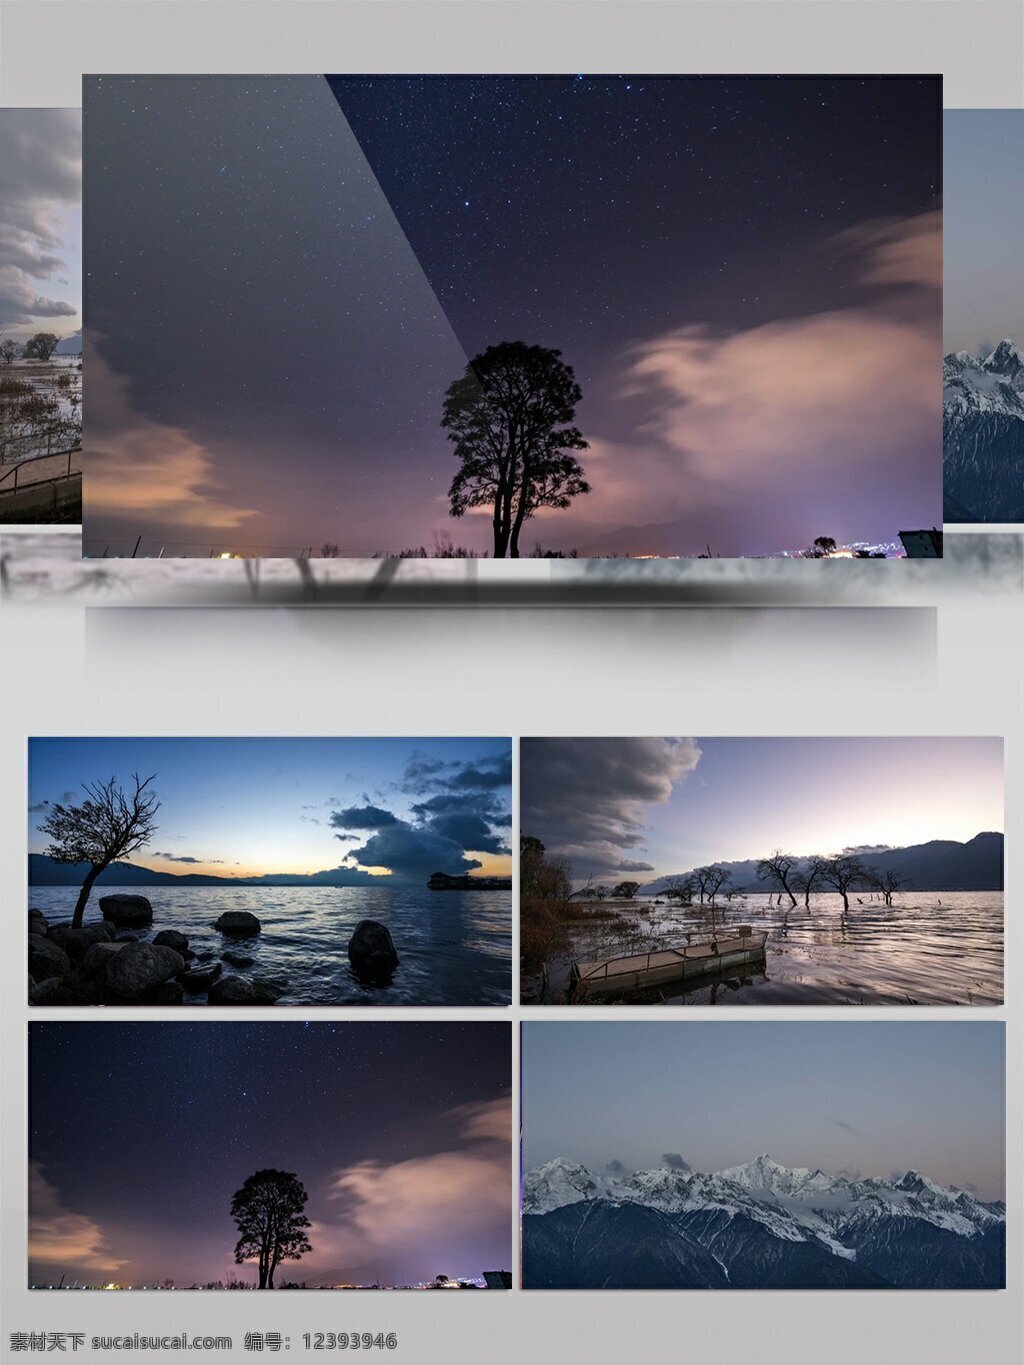 大自然 美丽 风景 实拍 视频 湖泊 旅游景点 雪山 夜空 自然风景